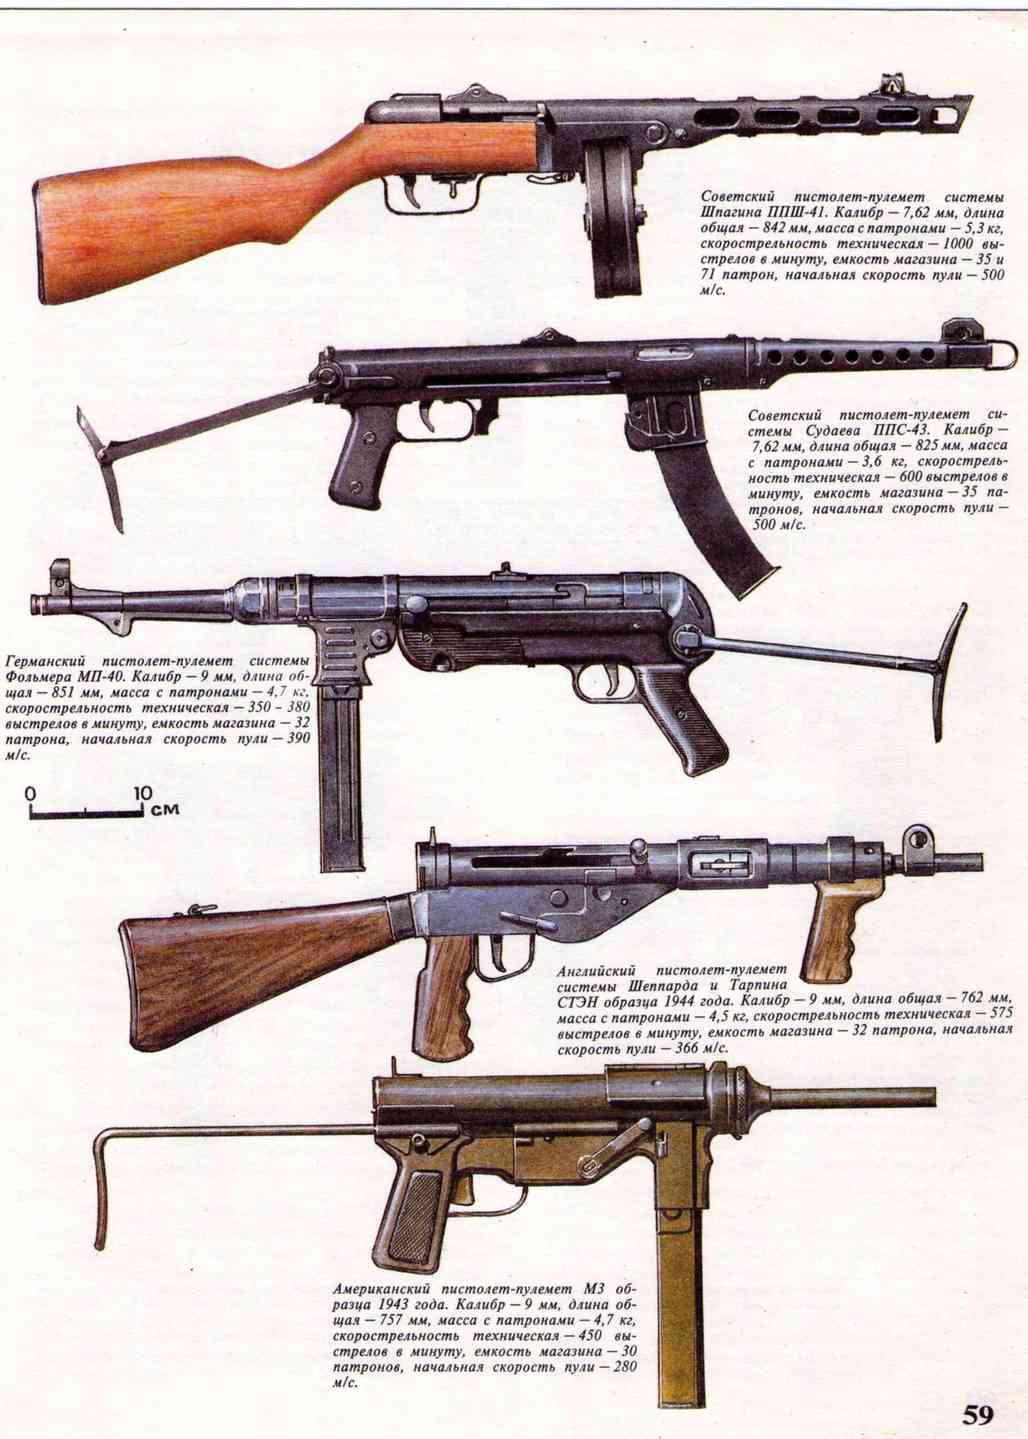 Какие образцы вооружений были приняты на вооружение ркка перед началом великой отечественной войны